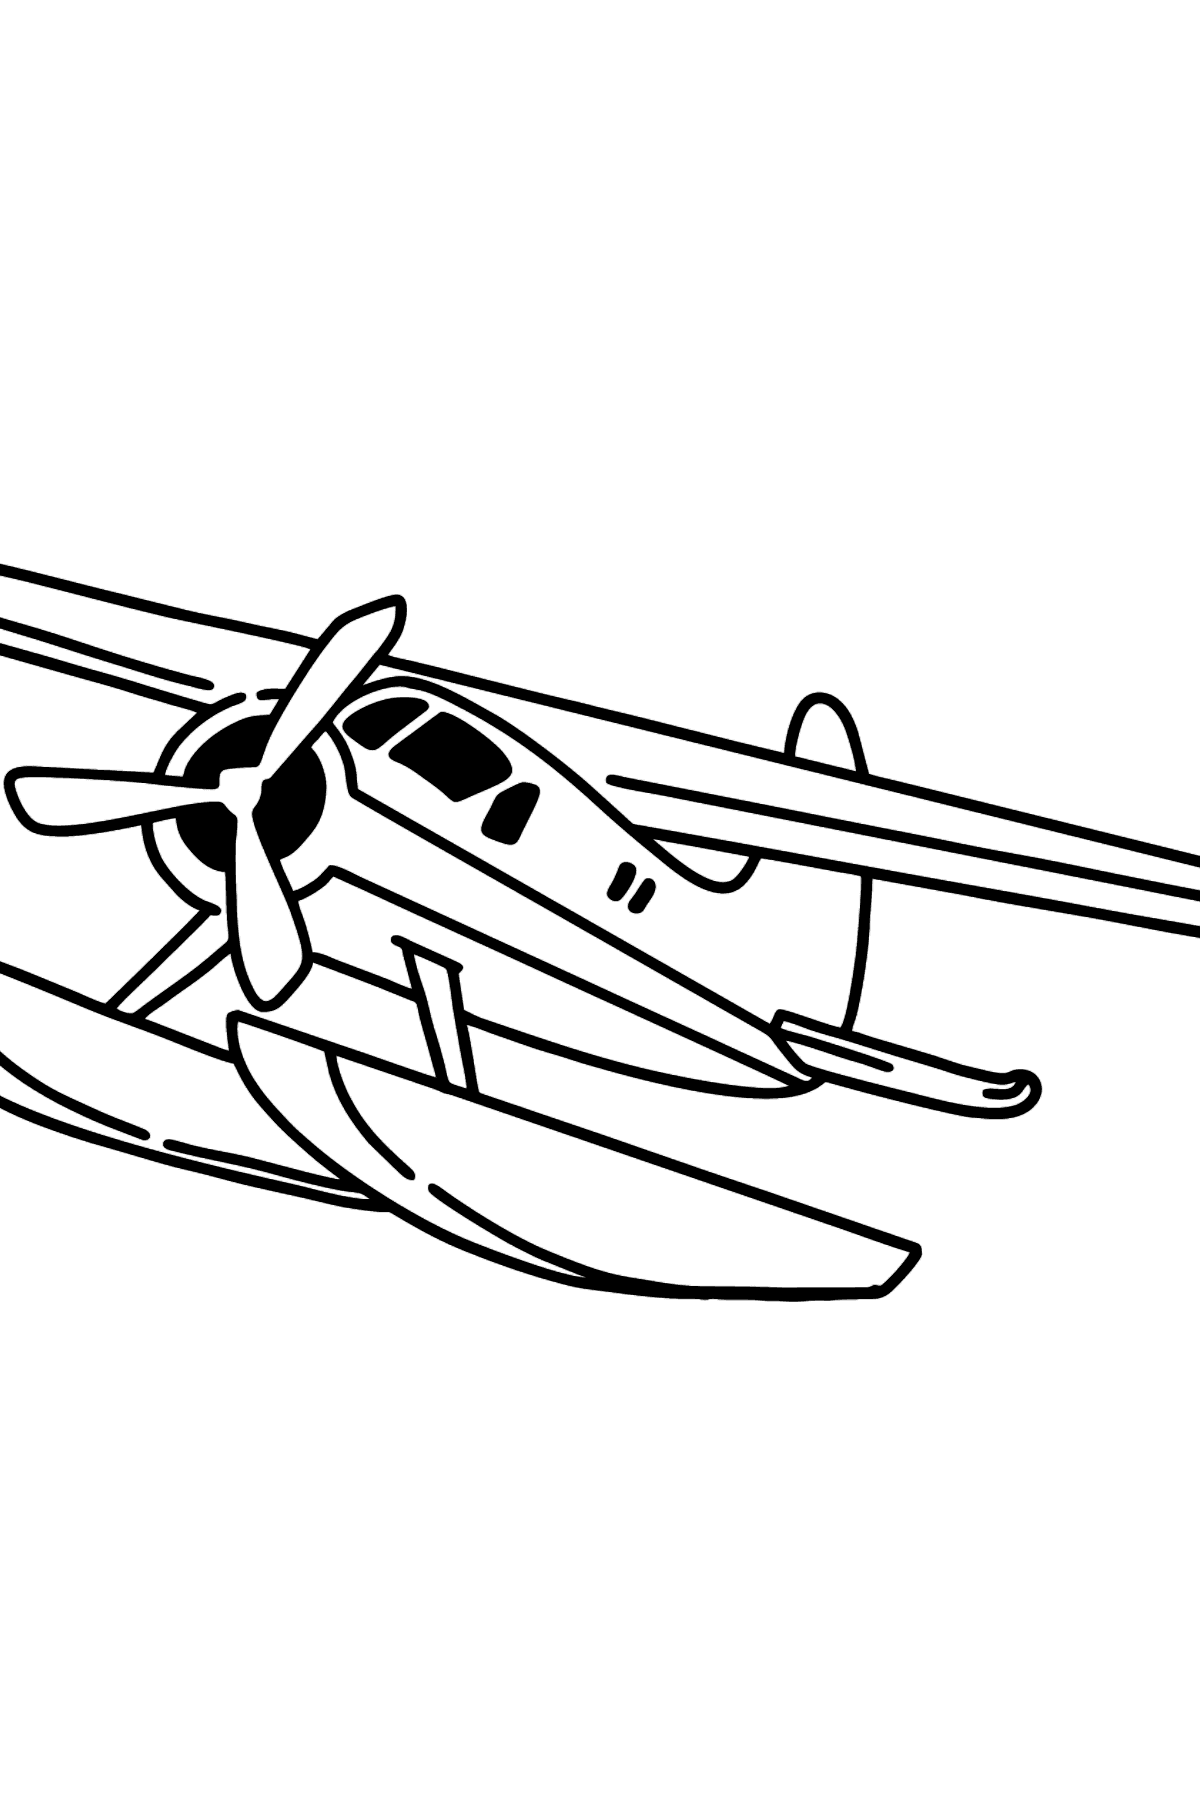 Dibujo de Avión Jet BE-200 para colorear - Dibujos para Colorear para Niños